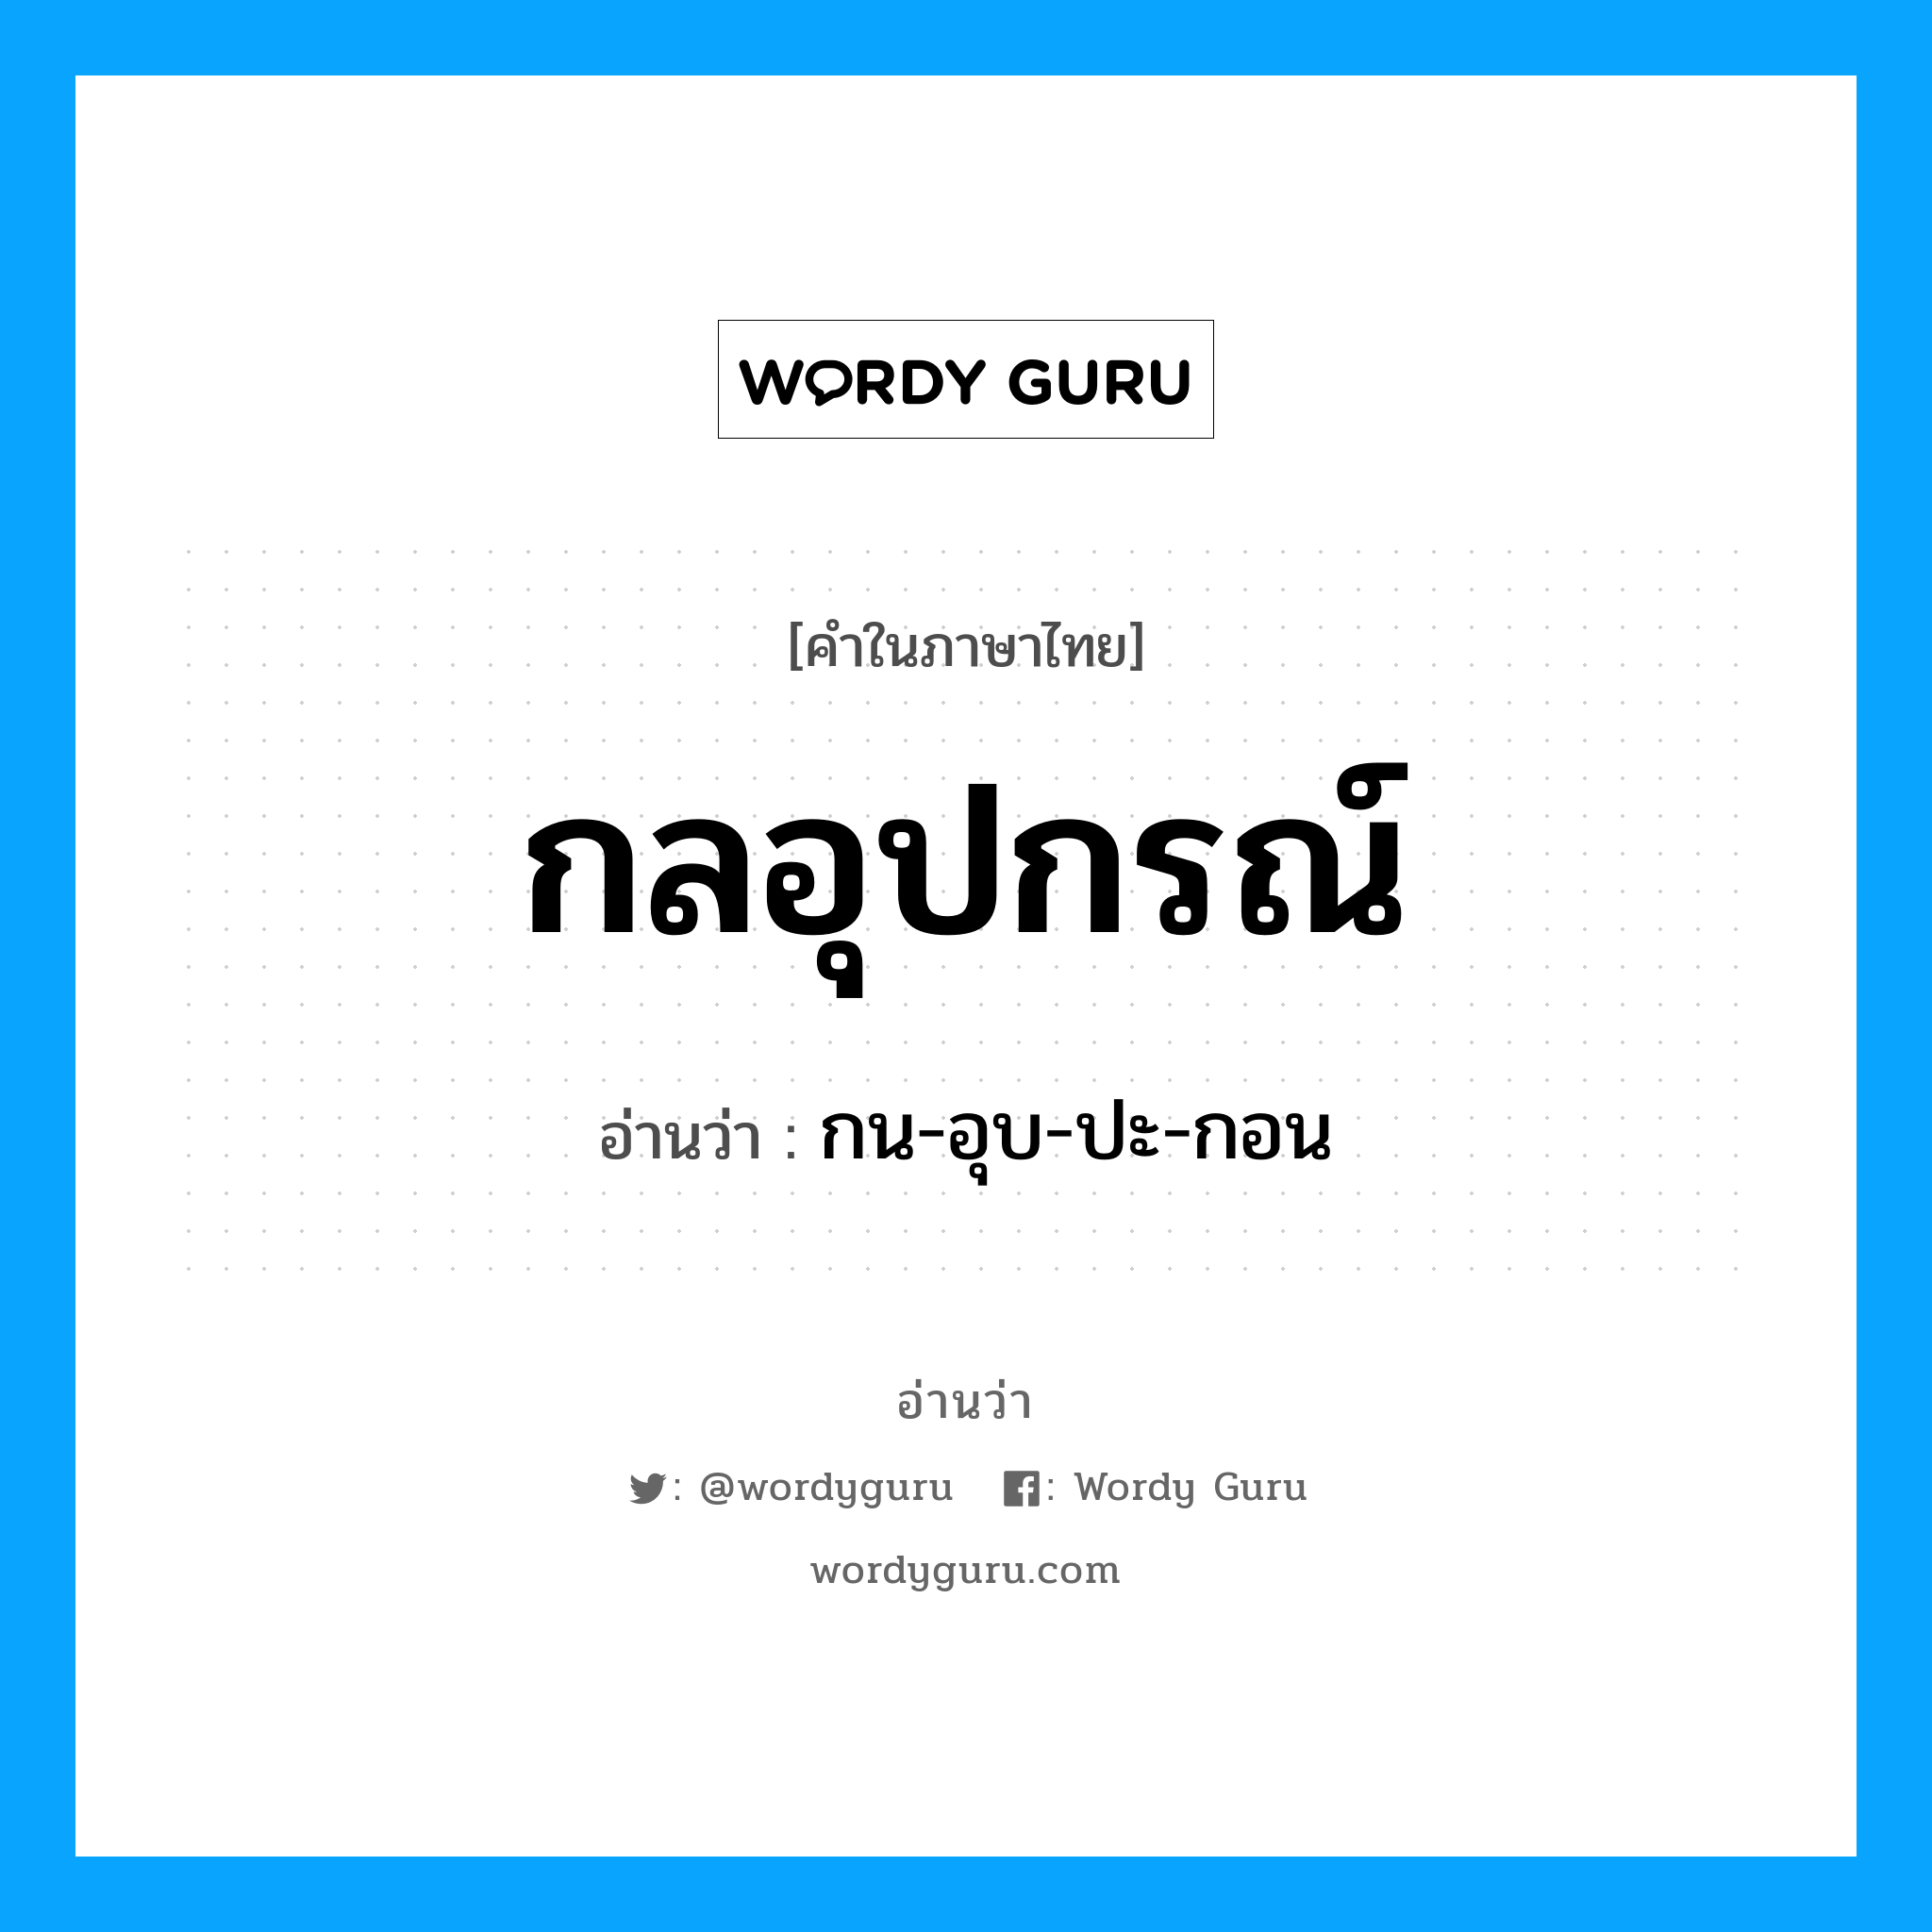 กน-อุบ-ปะ-กอน เป็นคำอ่านของคำไหน?, คำในภาษาไทย กน-อุบ-ปะ-กอน อ่านว่า กลอุปกรณ์